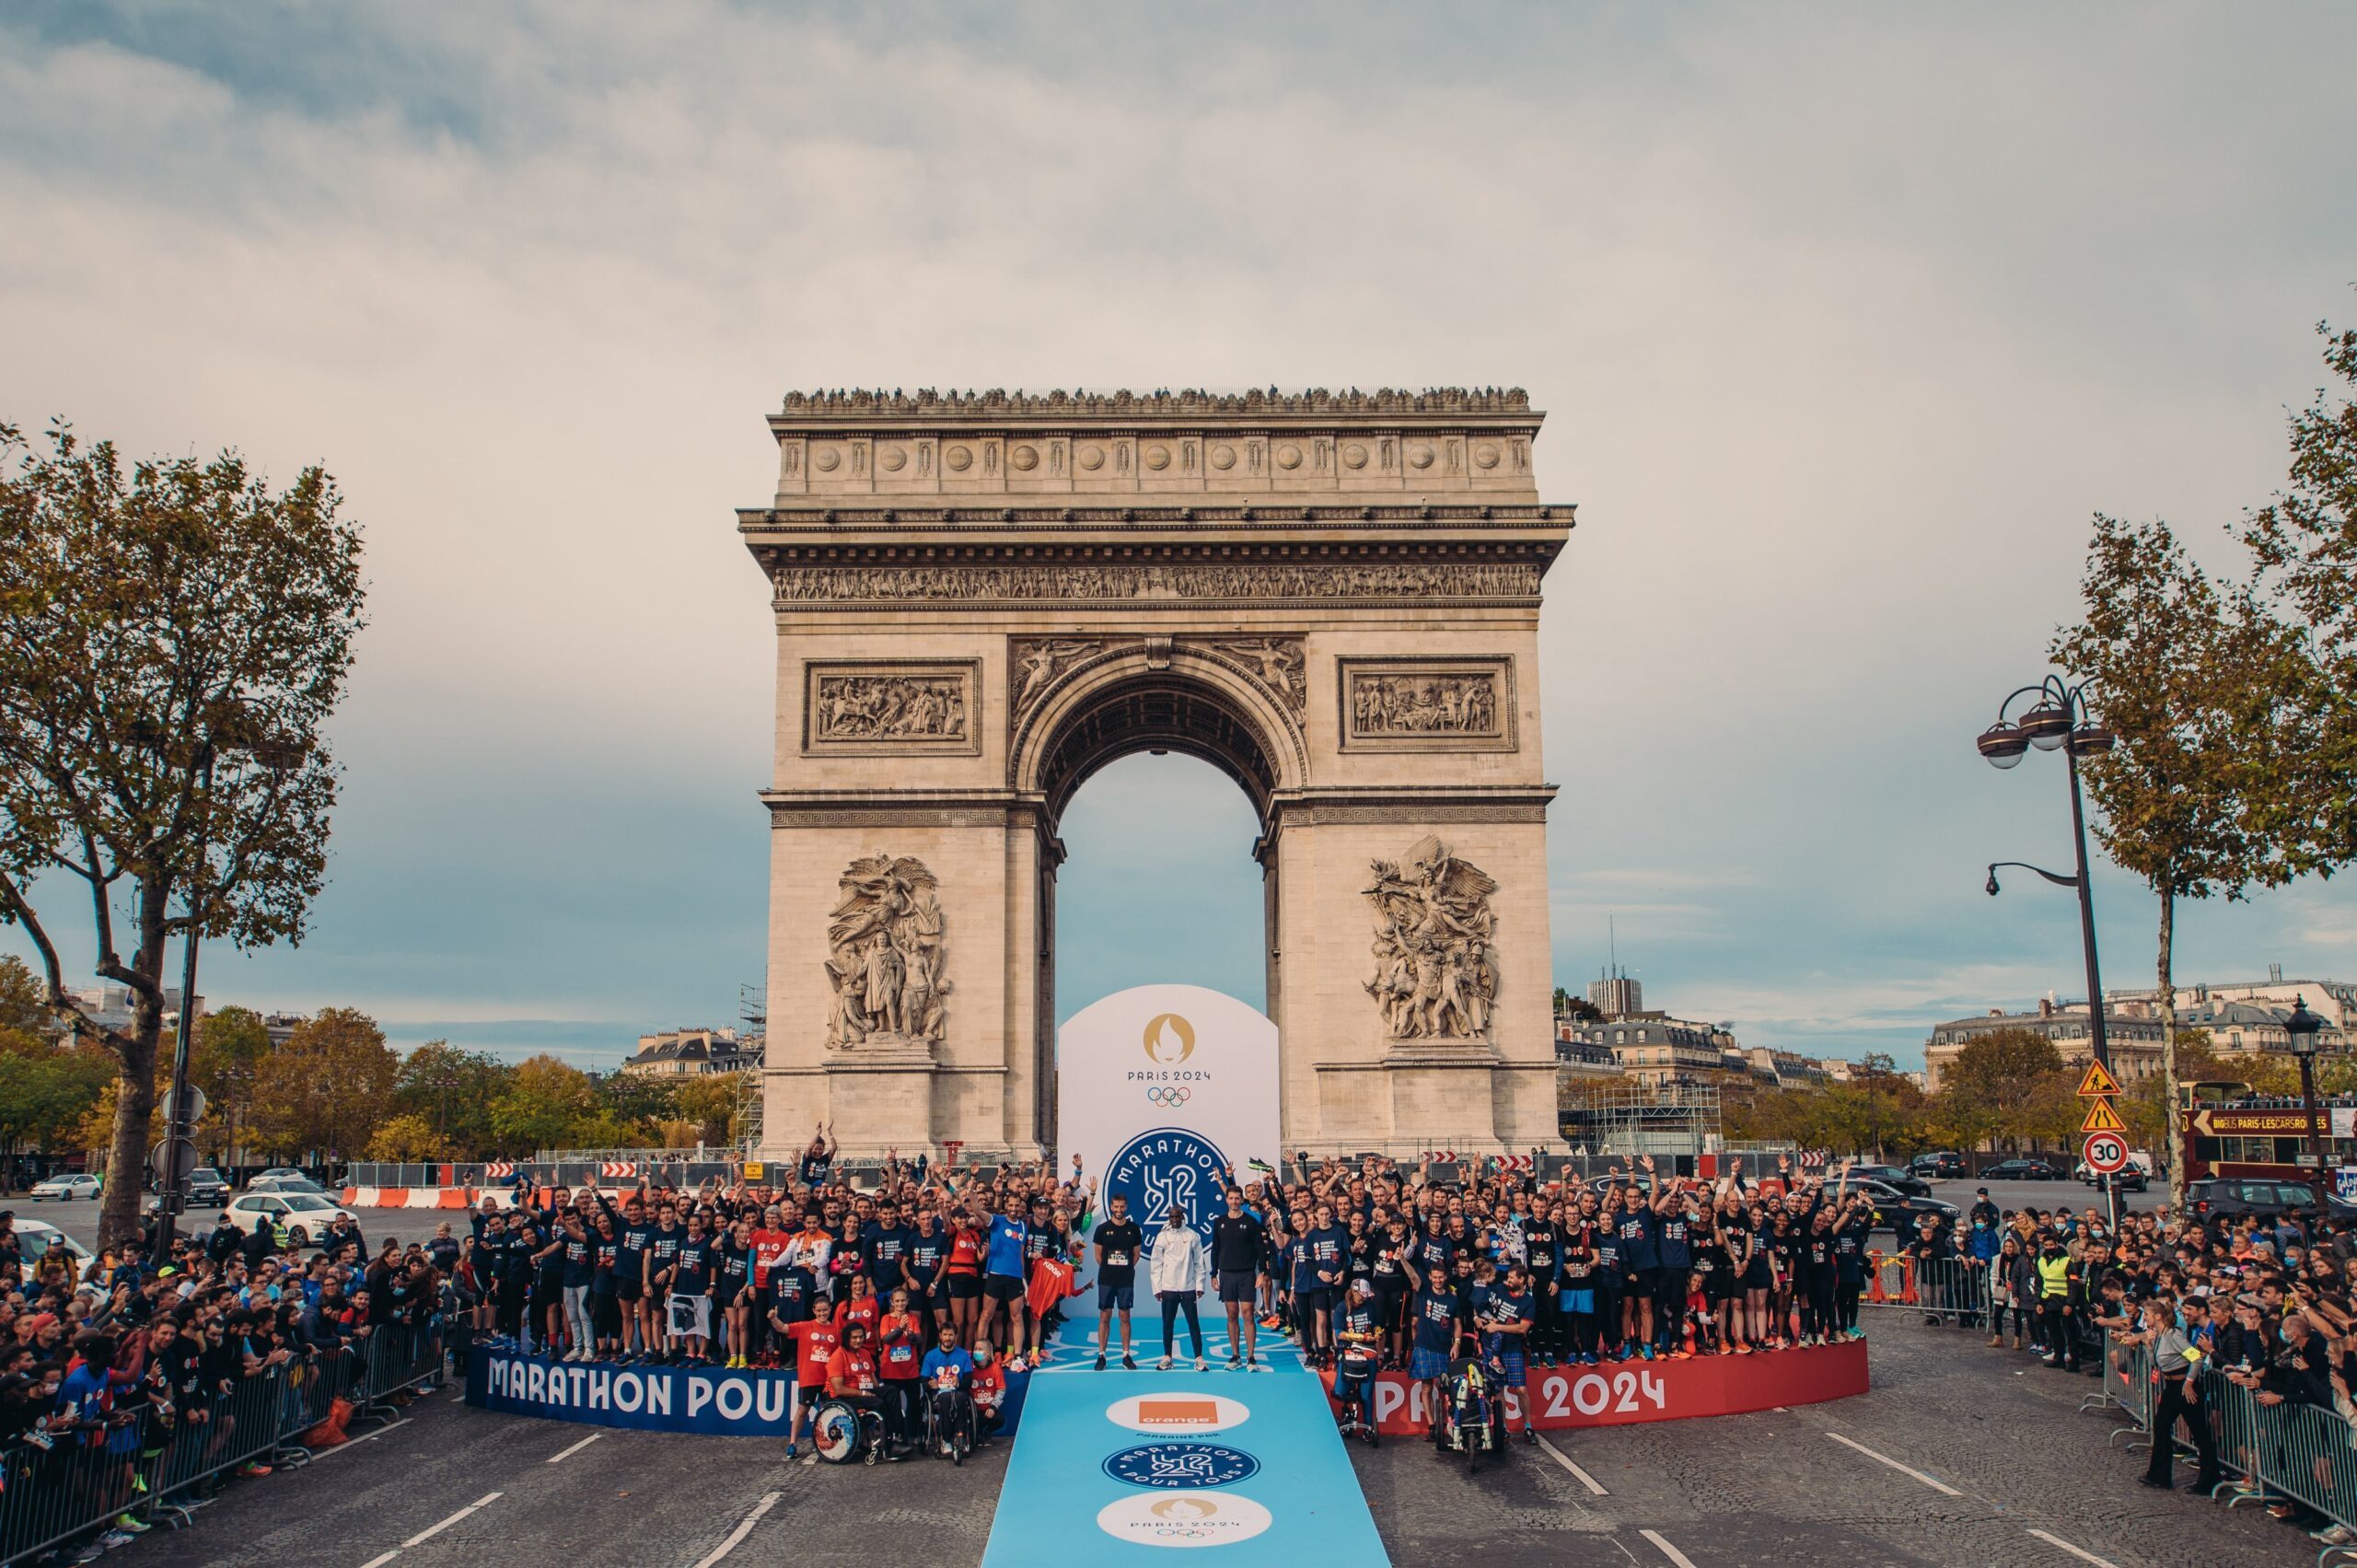 Paris 2024’s Mass Participation Marathon